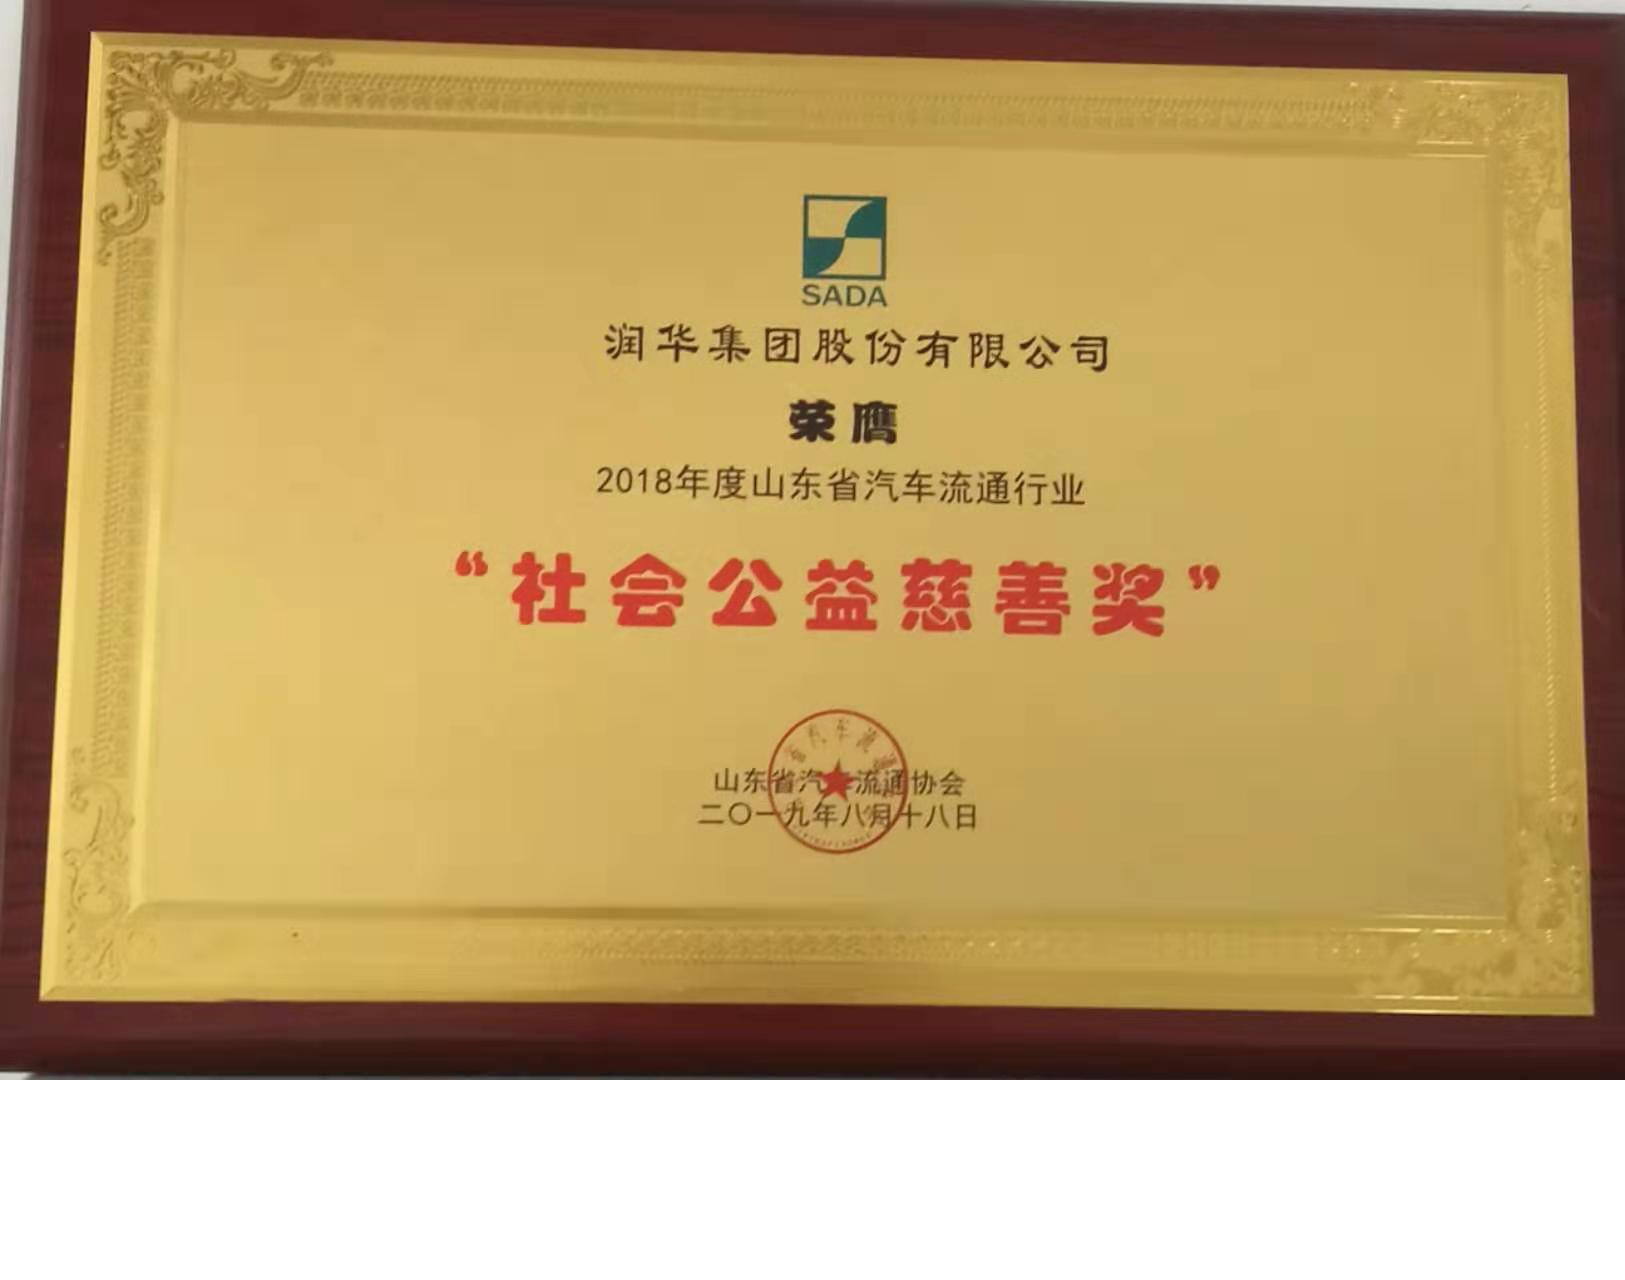 2018年度山東省汽車流通行業社會公益慈善獎